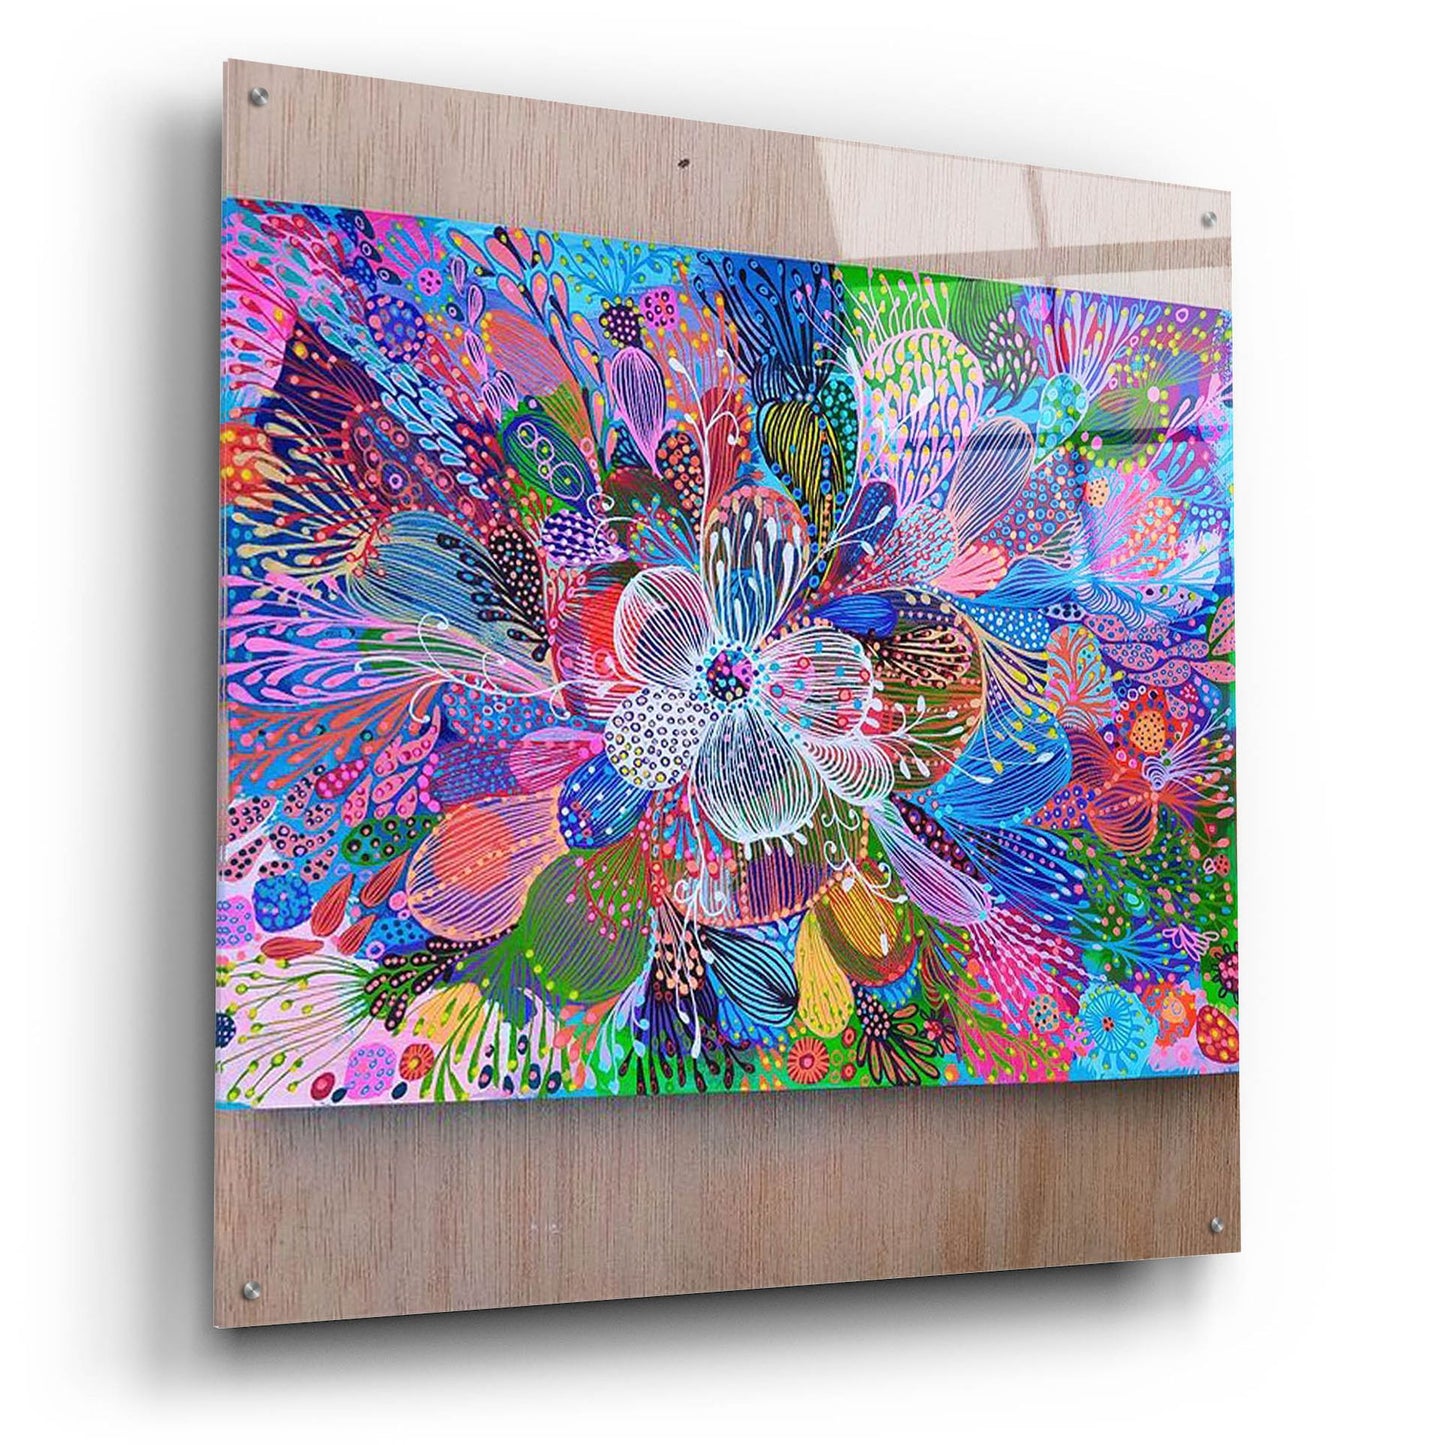 Epic Art 'Blooming2 by Noemi Ibarz, Acrylic Glass Wall Art,36x36